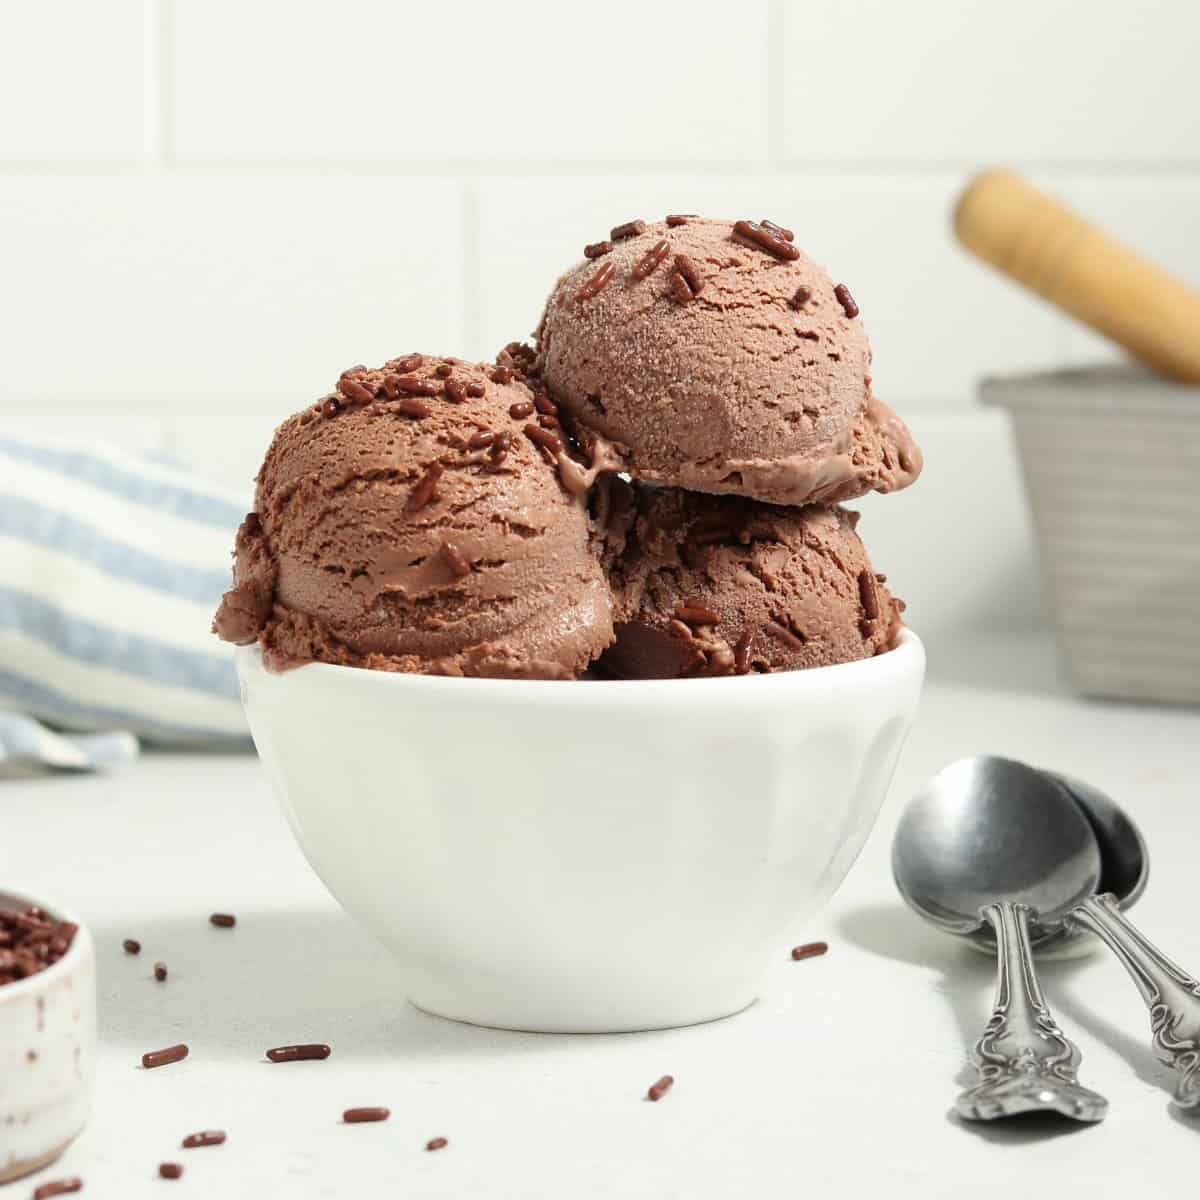 https://veganhuggs.com/wp-content/uploads/2021/08/vegan-chocolate-ice-cream-square-crop.jpg